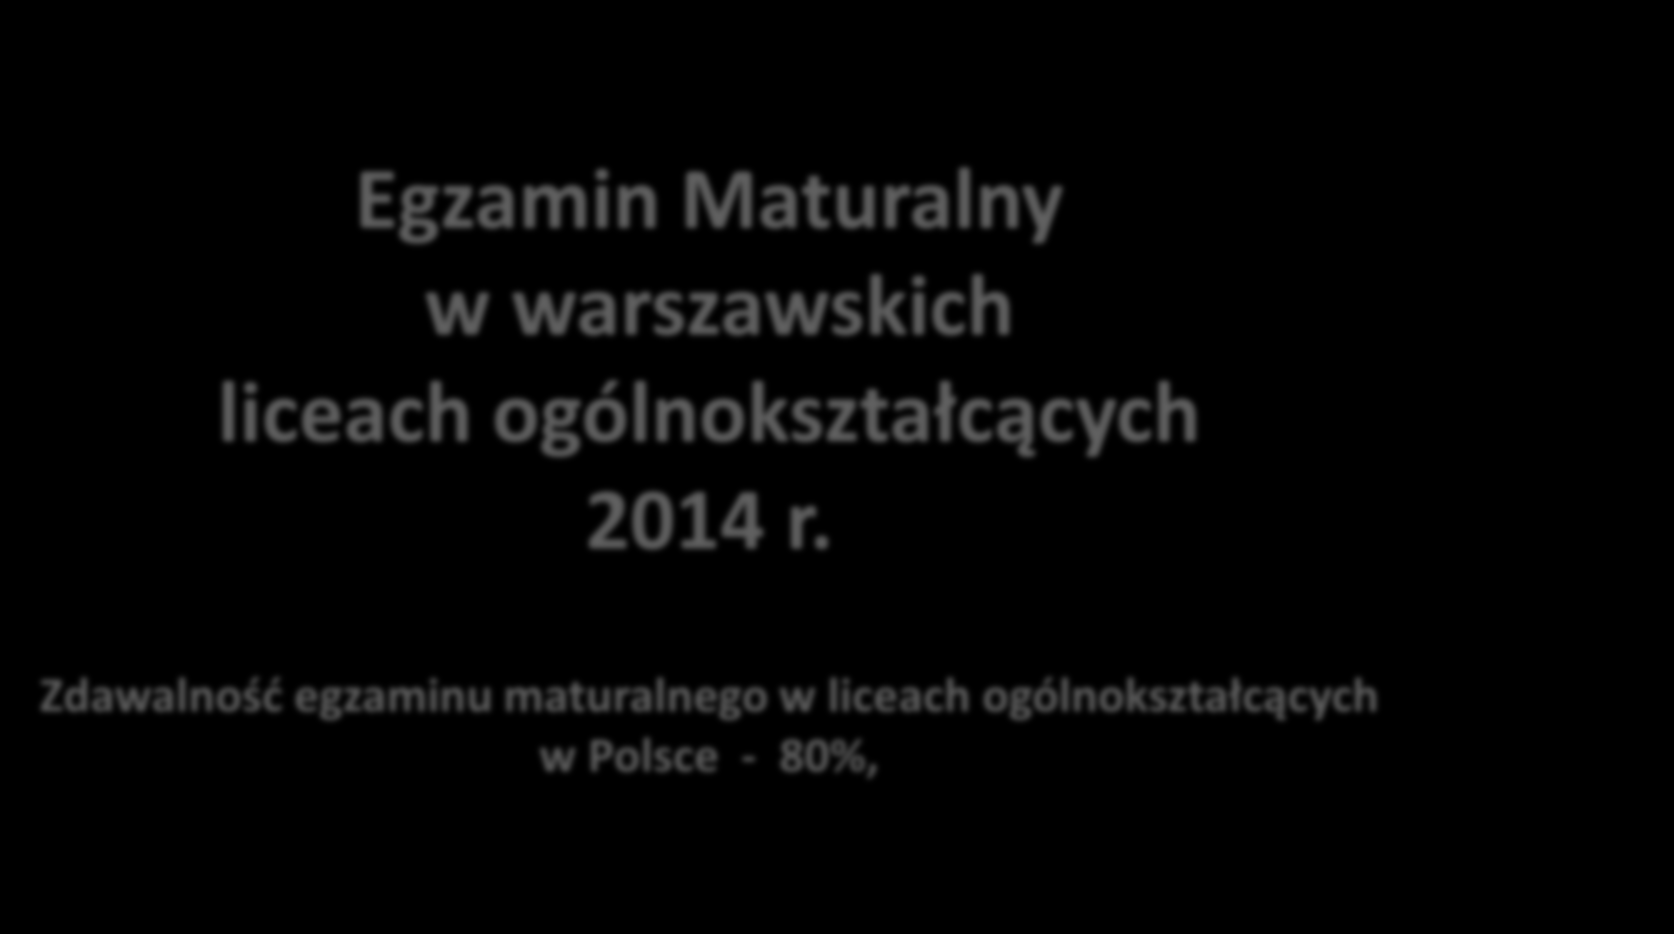 Egzamin Maturalny w warszawskich liceach ogólnokształcących 2014 r.